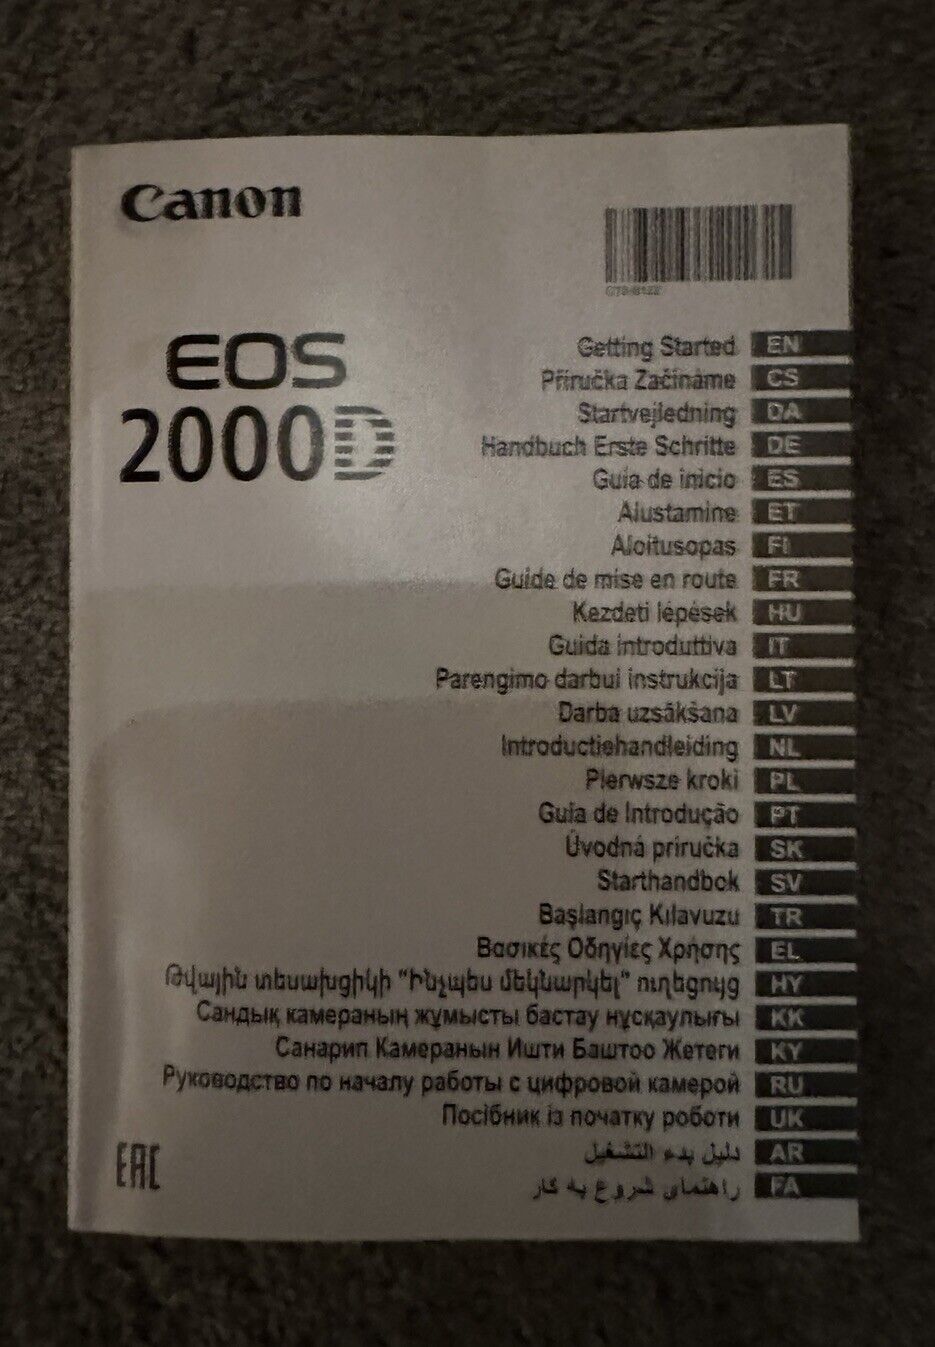 Canon EOS 2000D Digitale Spiegelreflexkamera mit EF-S 18-55mm SB130 256GB